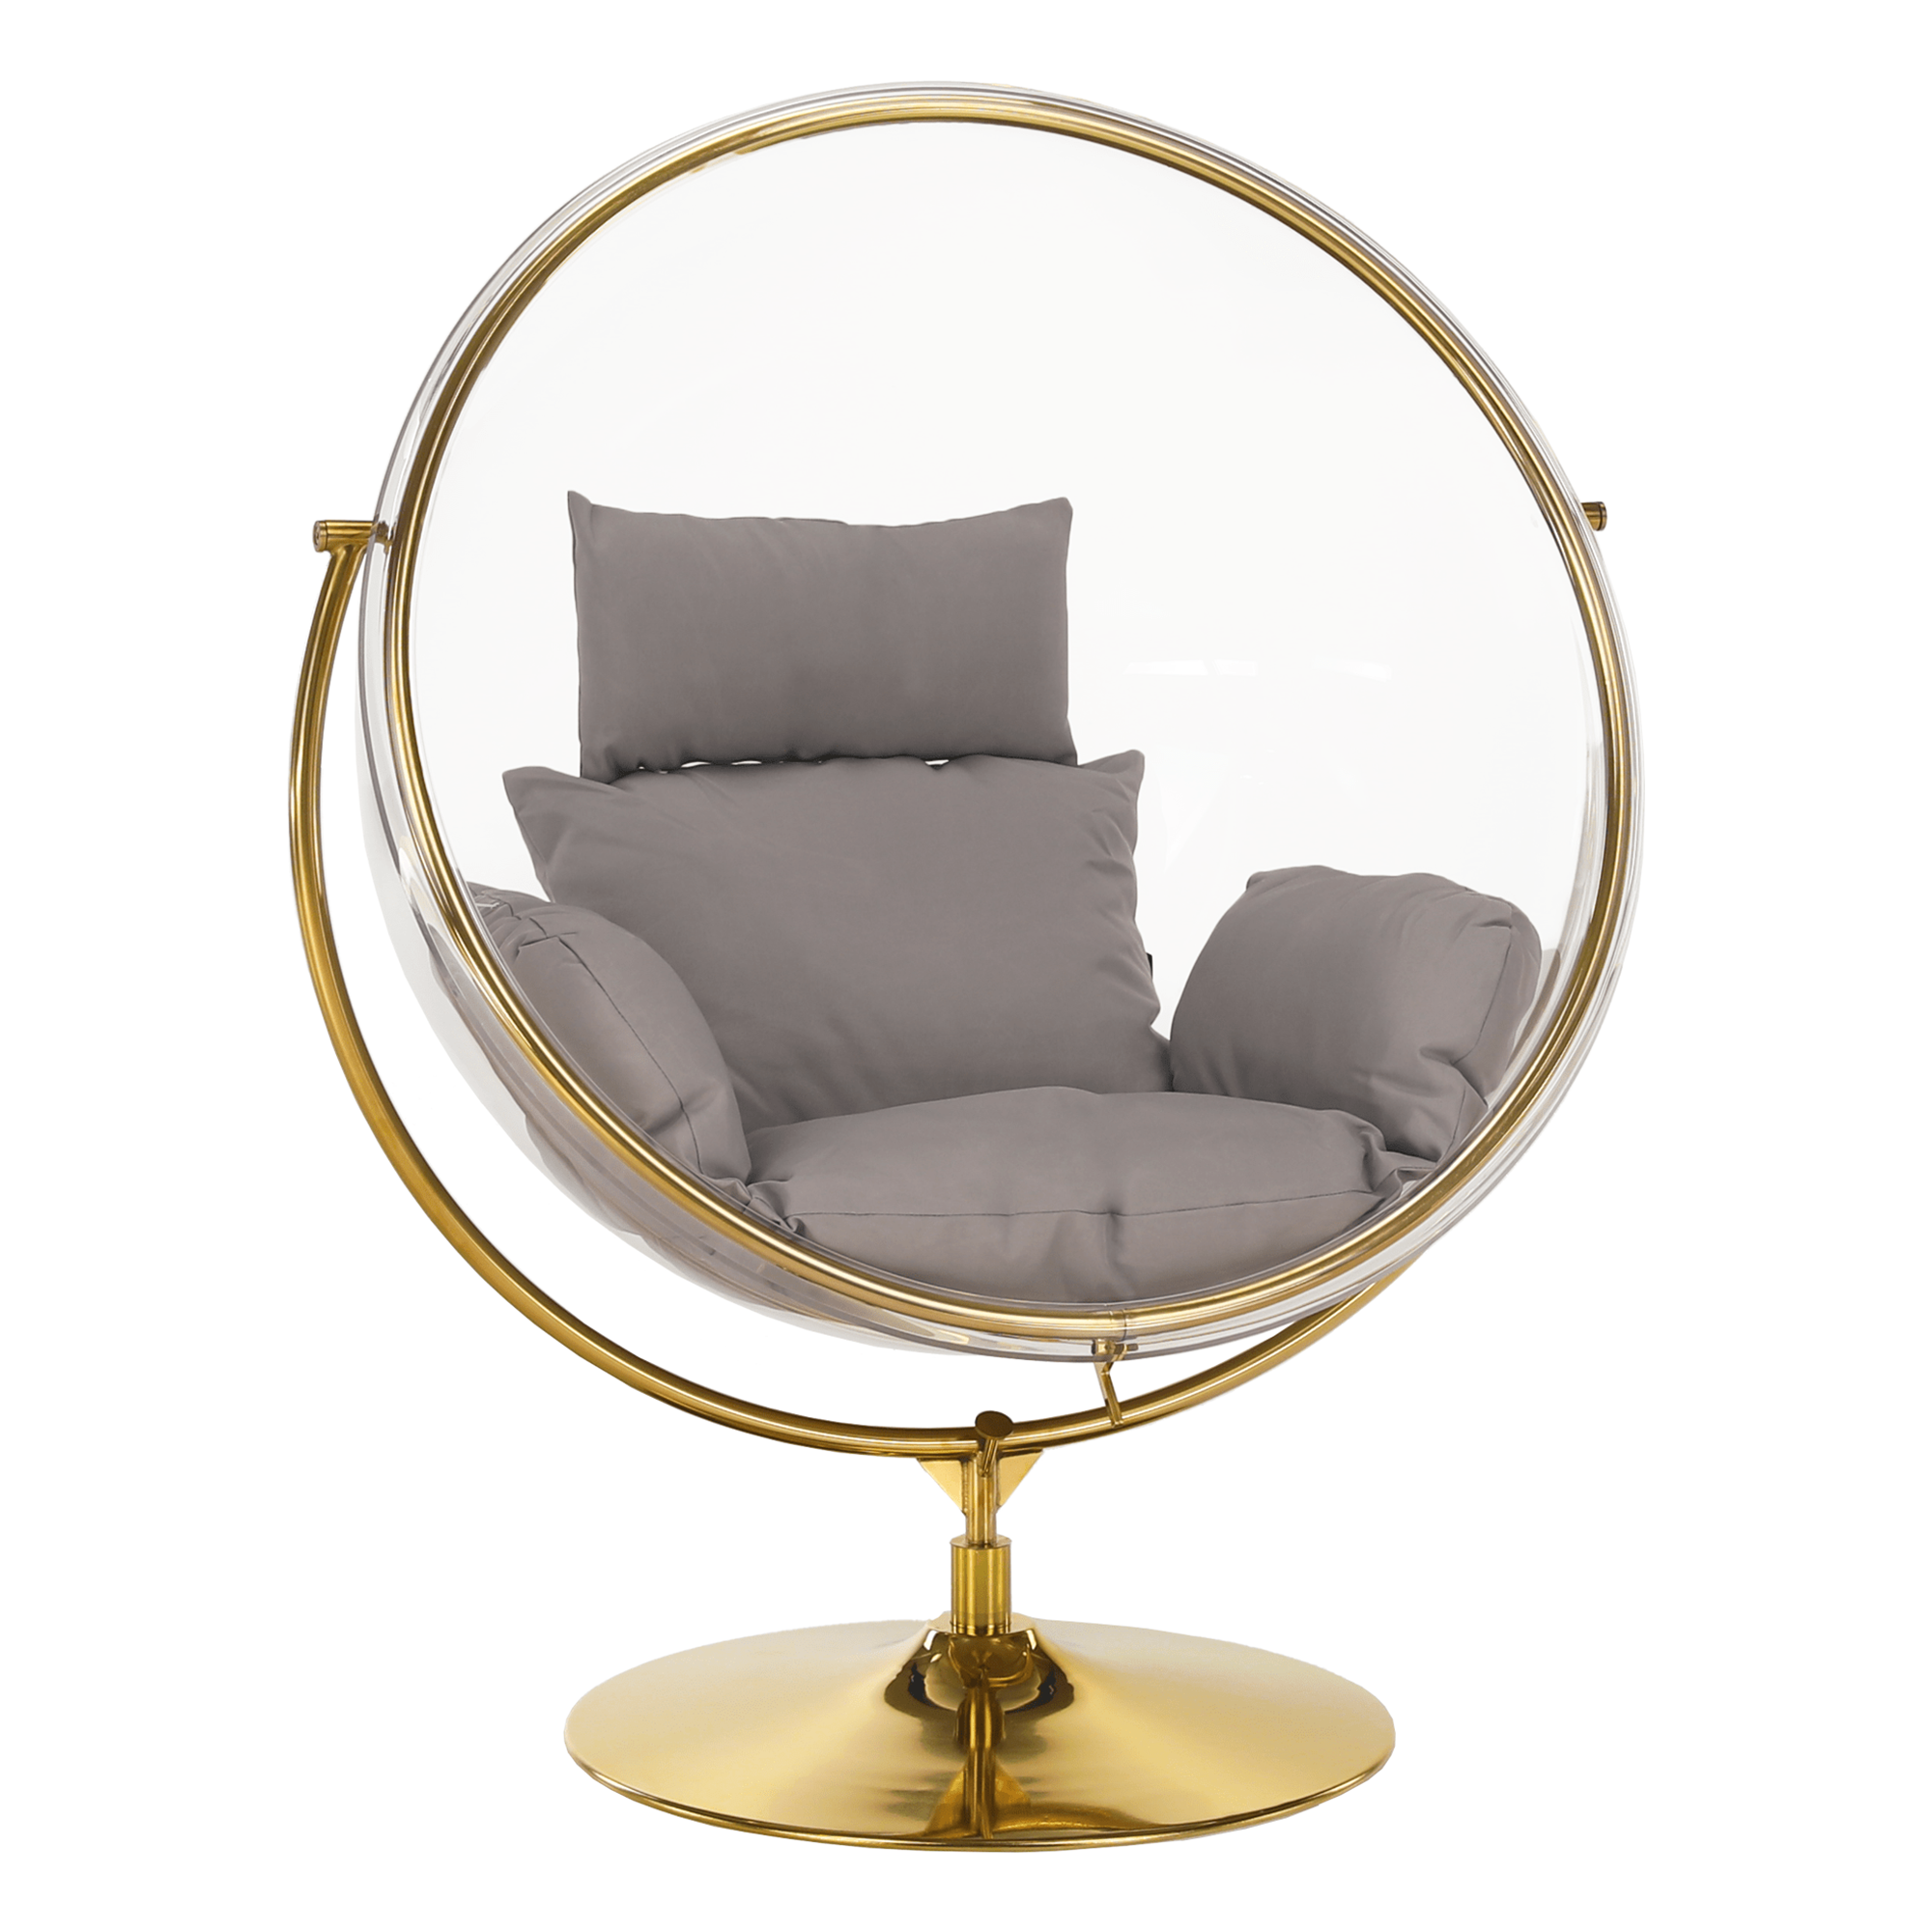 Függő fotel állvánnyal, átlátszó/arany/szürke, bubble new typ 2